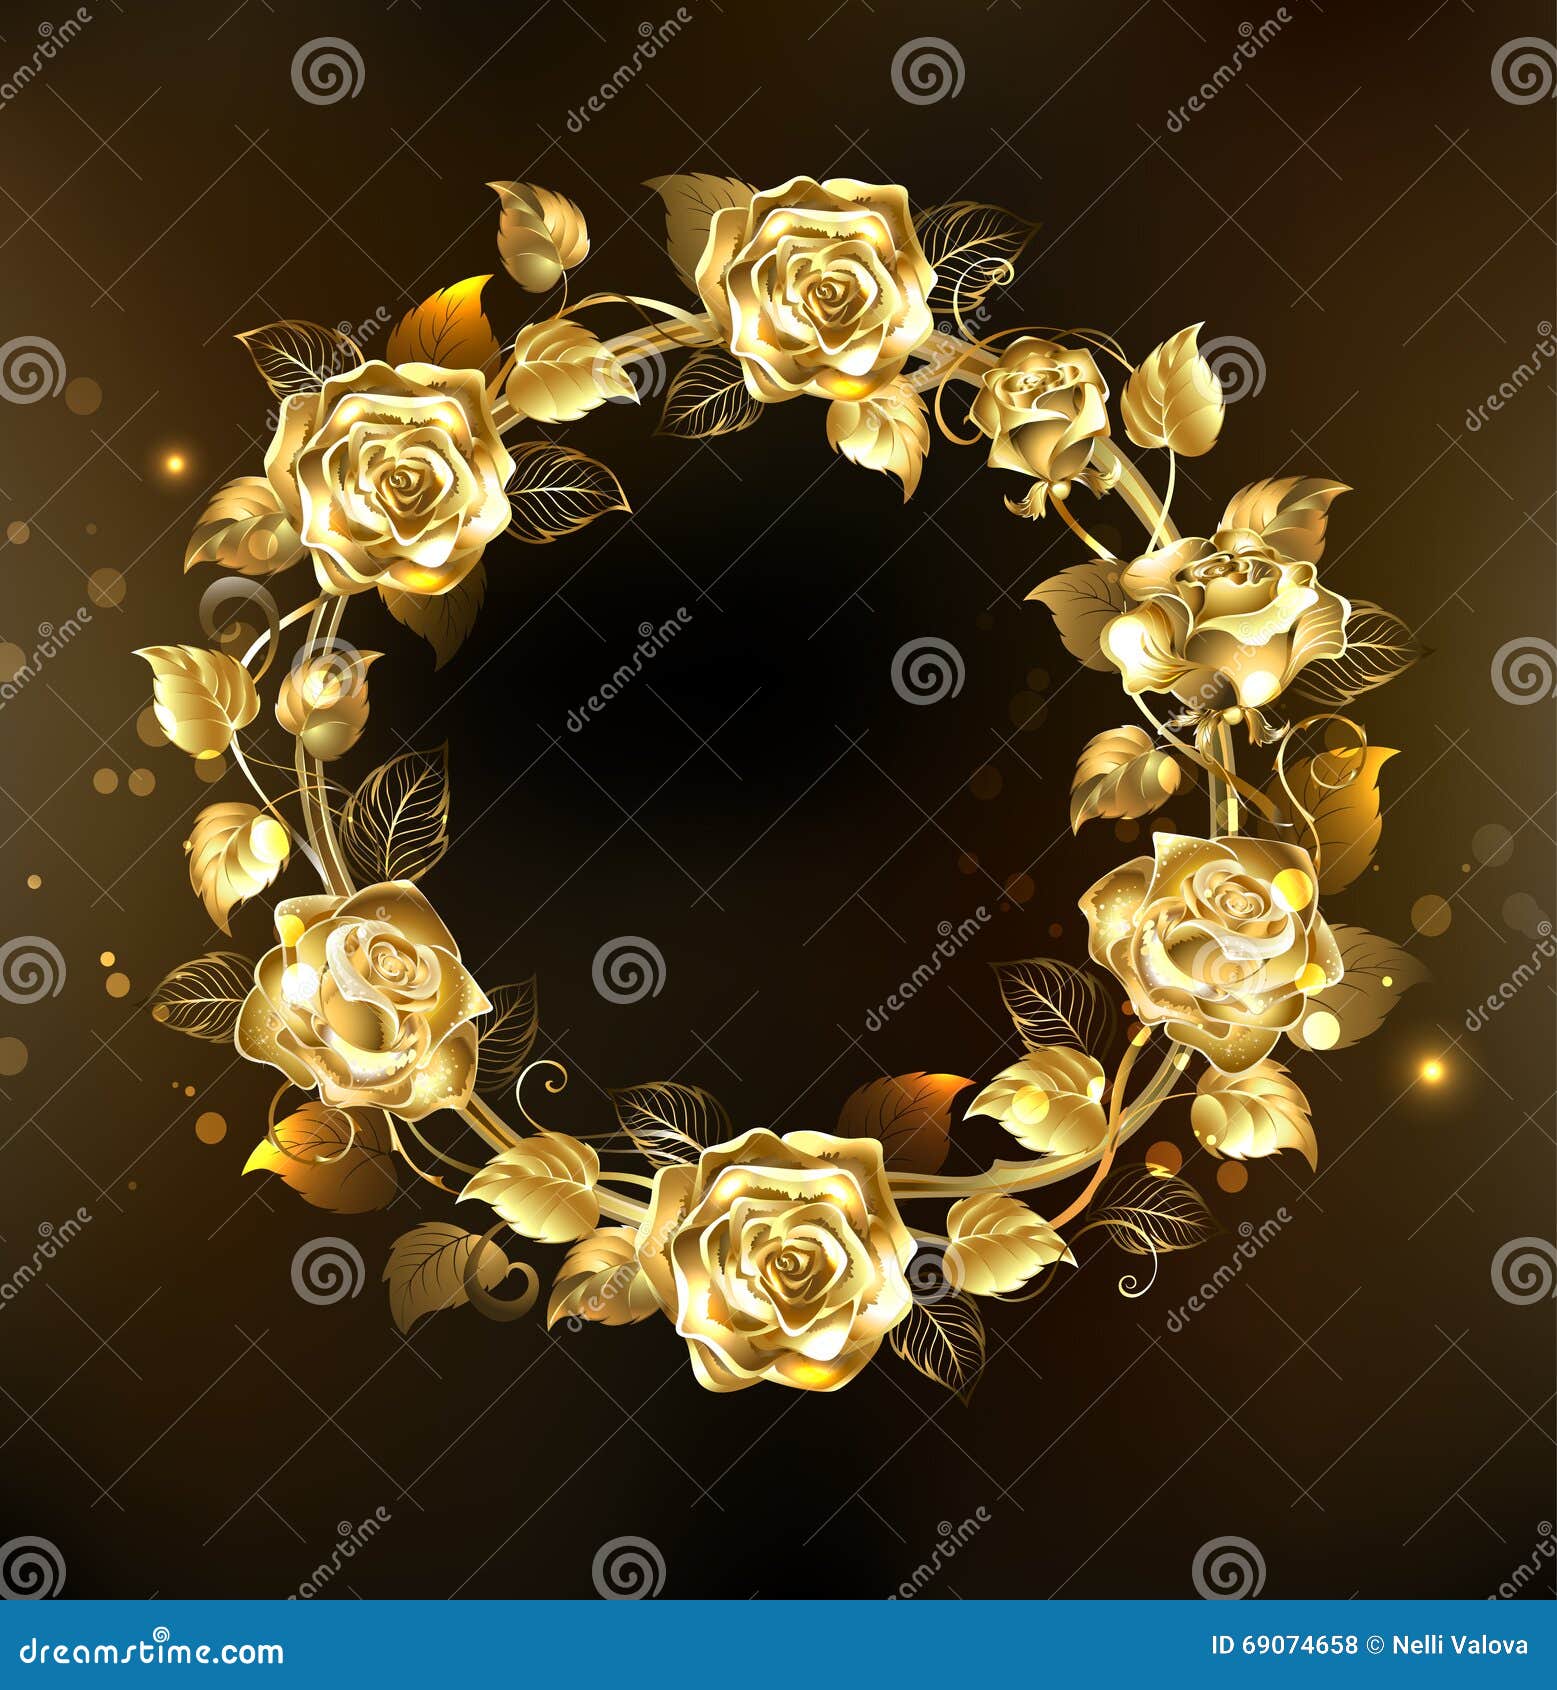 Vòng hoa hoa hồng vàng - một tác phẩm nghệ thuật đẹp tuyệt vời để trang trí cho tâm hồn và ngôi nhà của bạn. Hãy ngắm nhìn sự tươi trẻ, tinh tế và nổi bật được tạo nên bởi các sắc màu đặc trưng này.